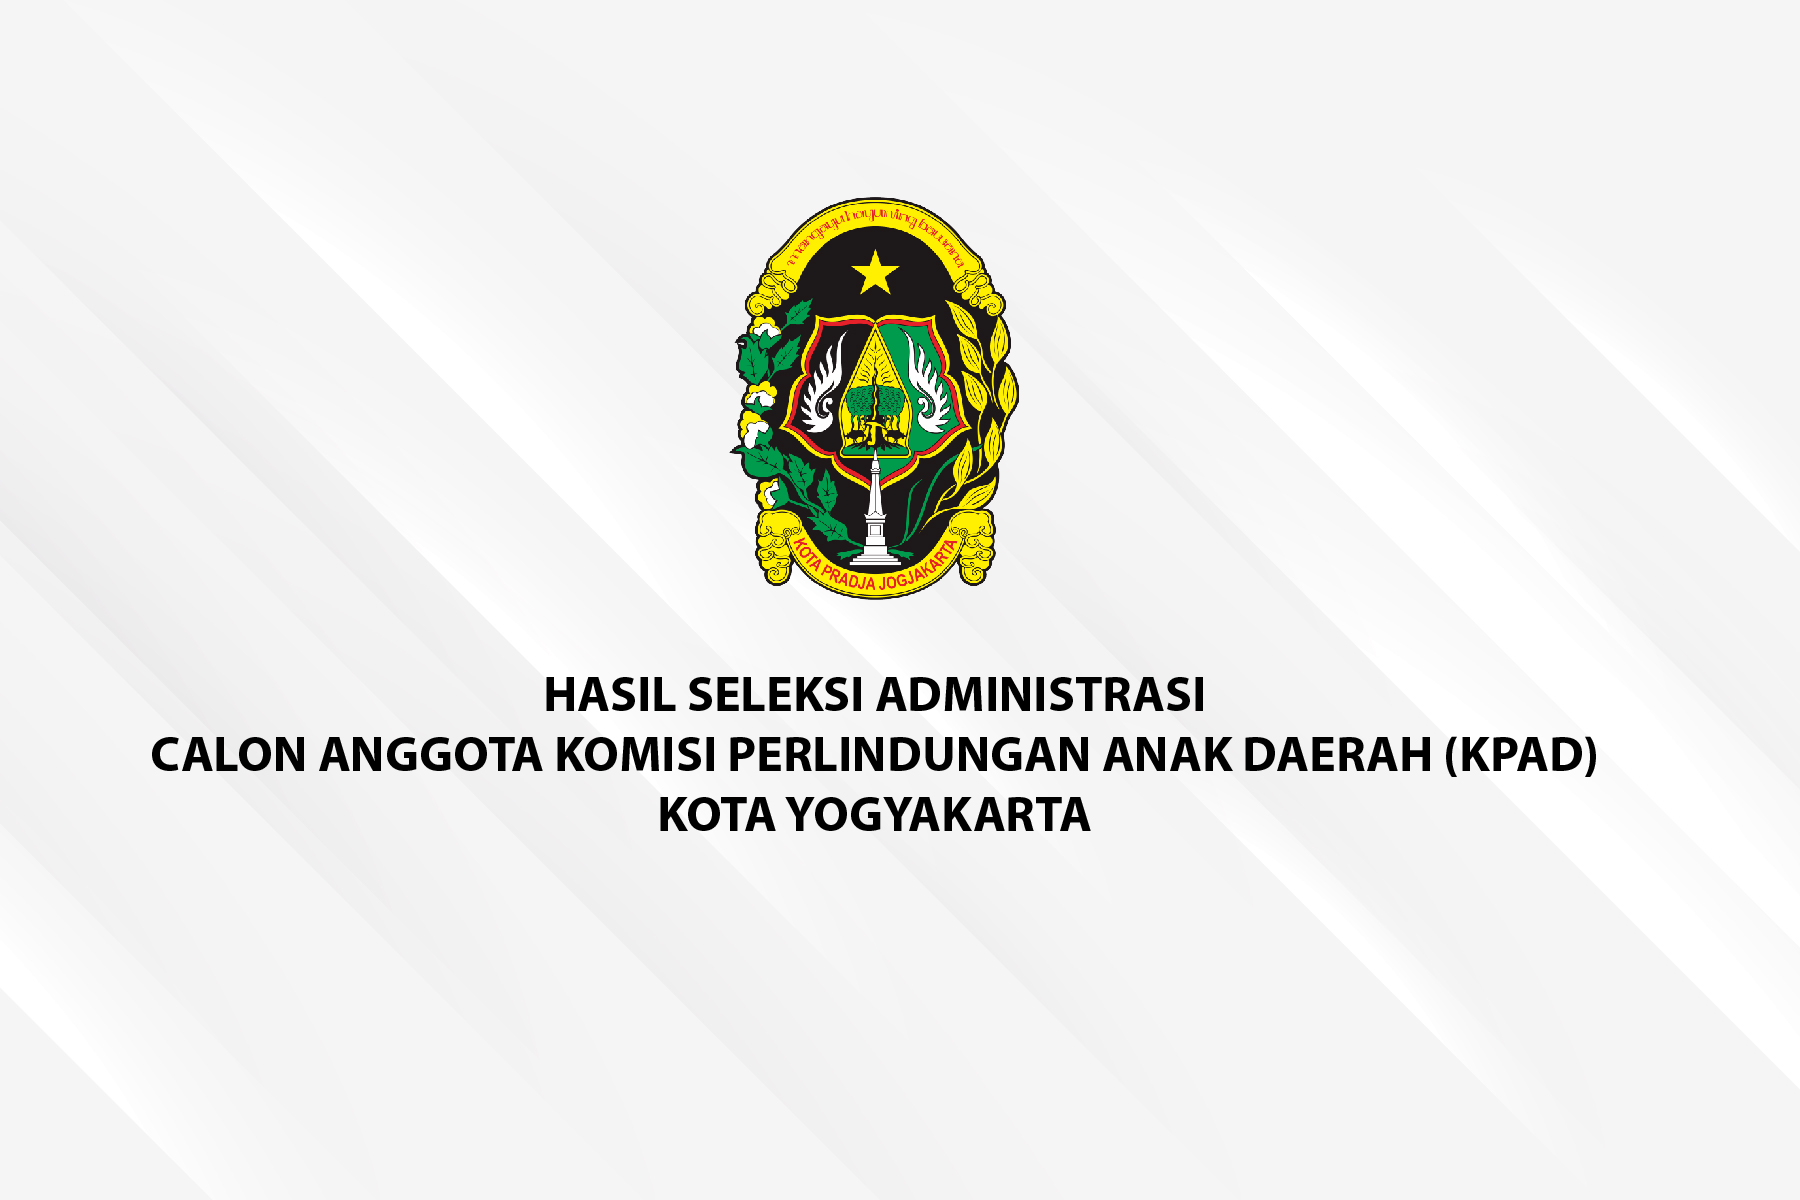 Hasil Seleksi Administrasi Calon Anggota Komisi Perlindungan Anak Daerah Kota Yogyakarta